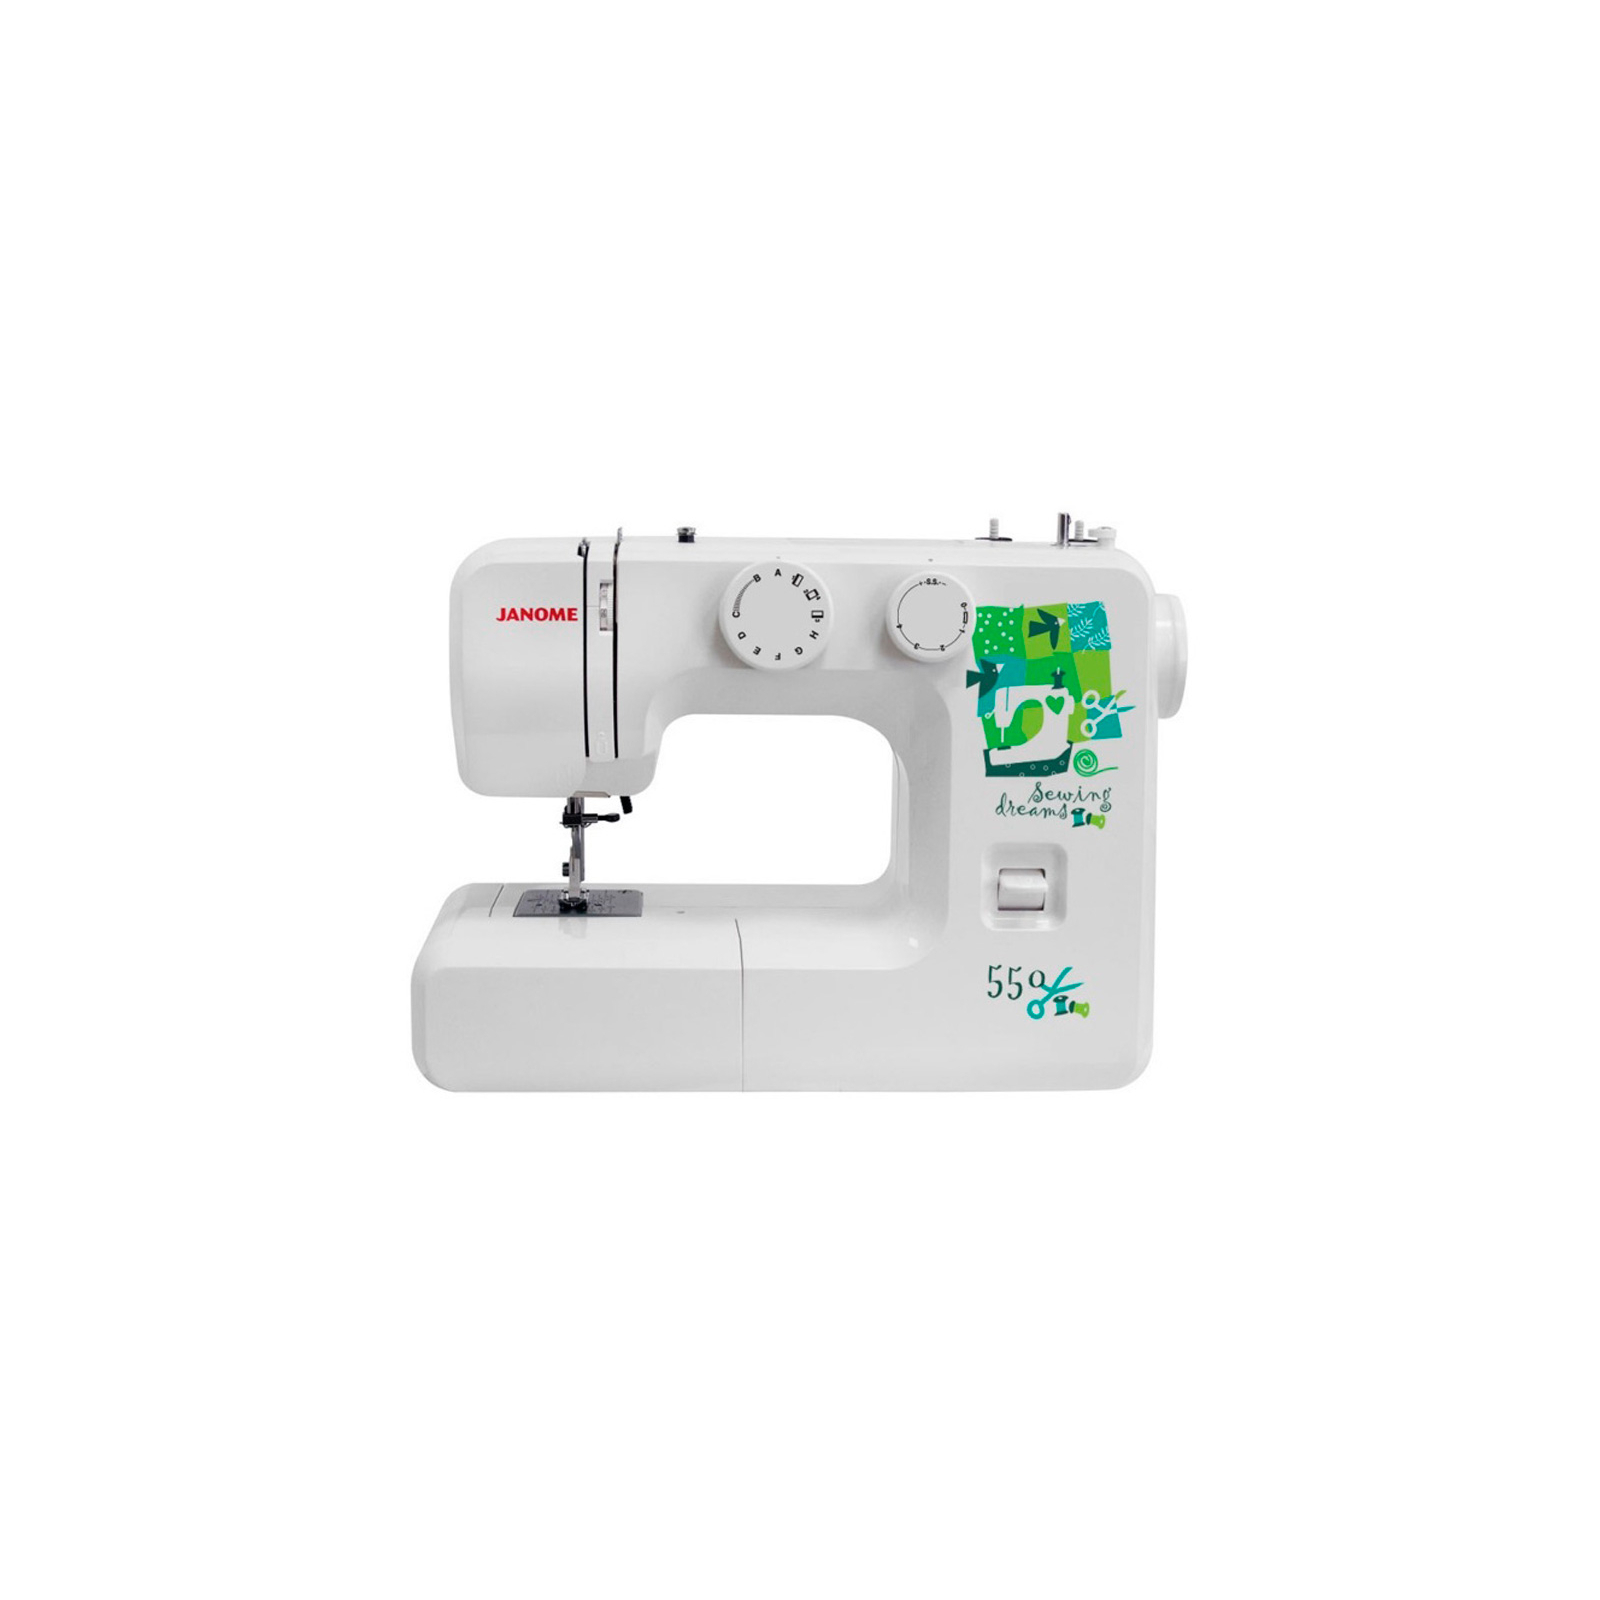 Швейна машина Janome Sewing Dream 550